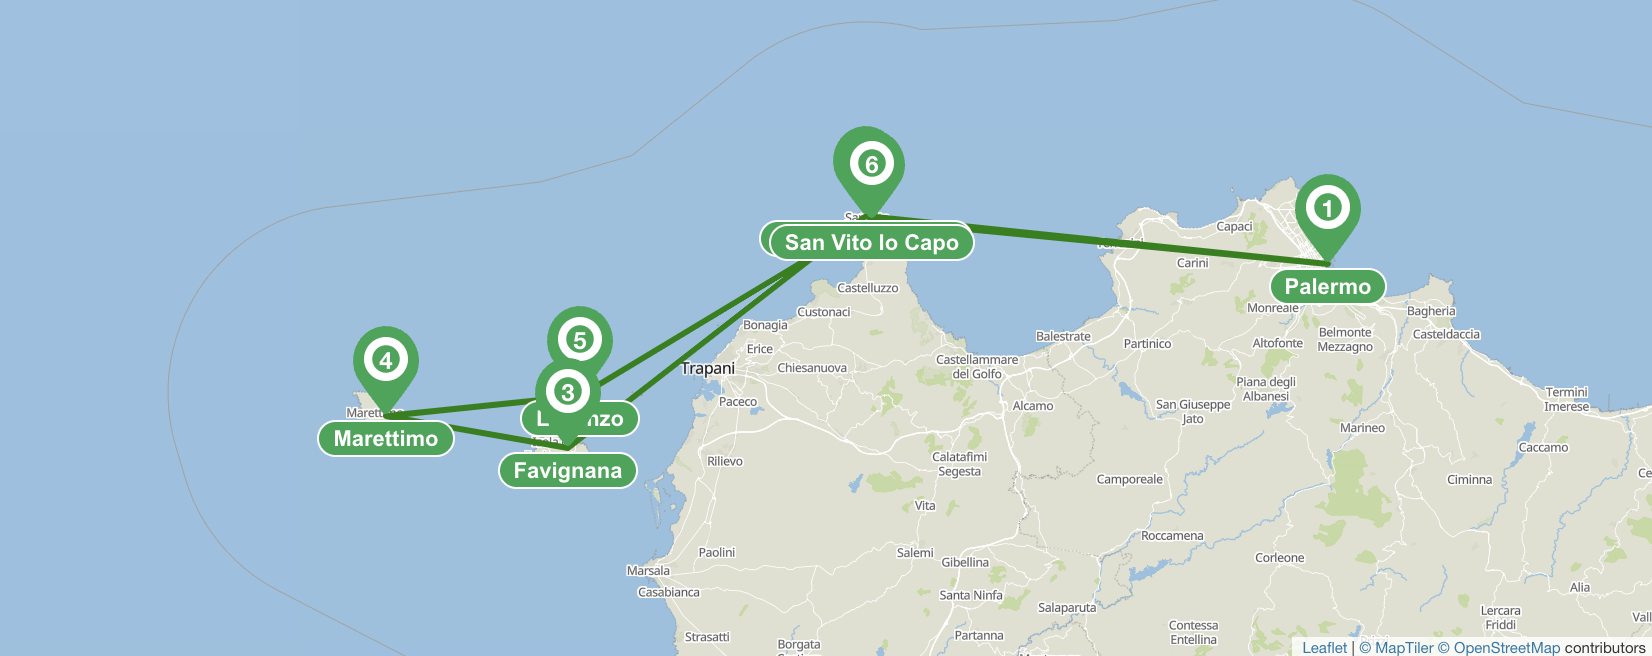 Da Palermo alle isole Egadi - Itinerario di 7 giorni in barca a vela